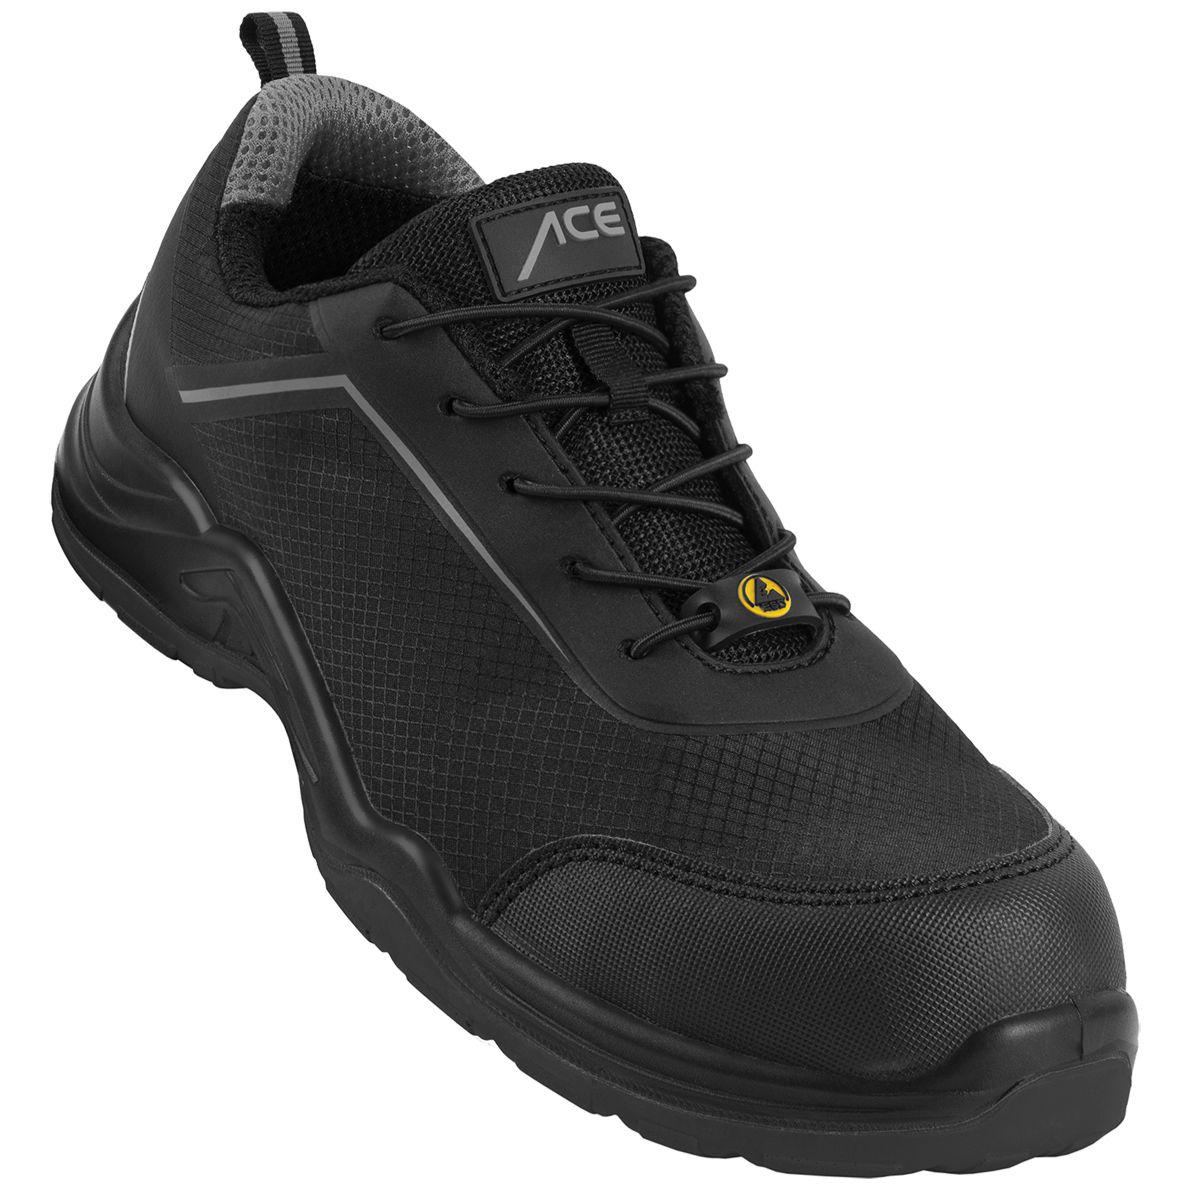 ACE Sapphire S1-P-Arbeits-Sneakers - mit Kunststoffkappe - Sicherheits-Schuhe für die Arbeit  - Schwarz/Grau - 48